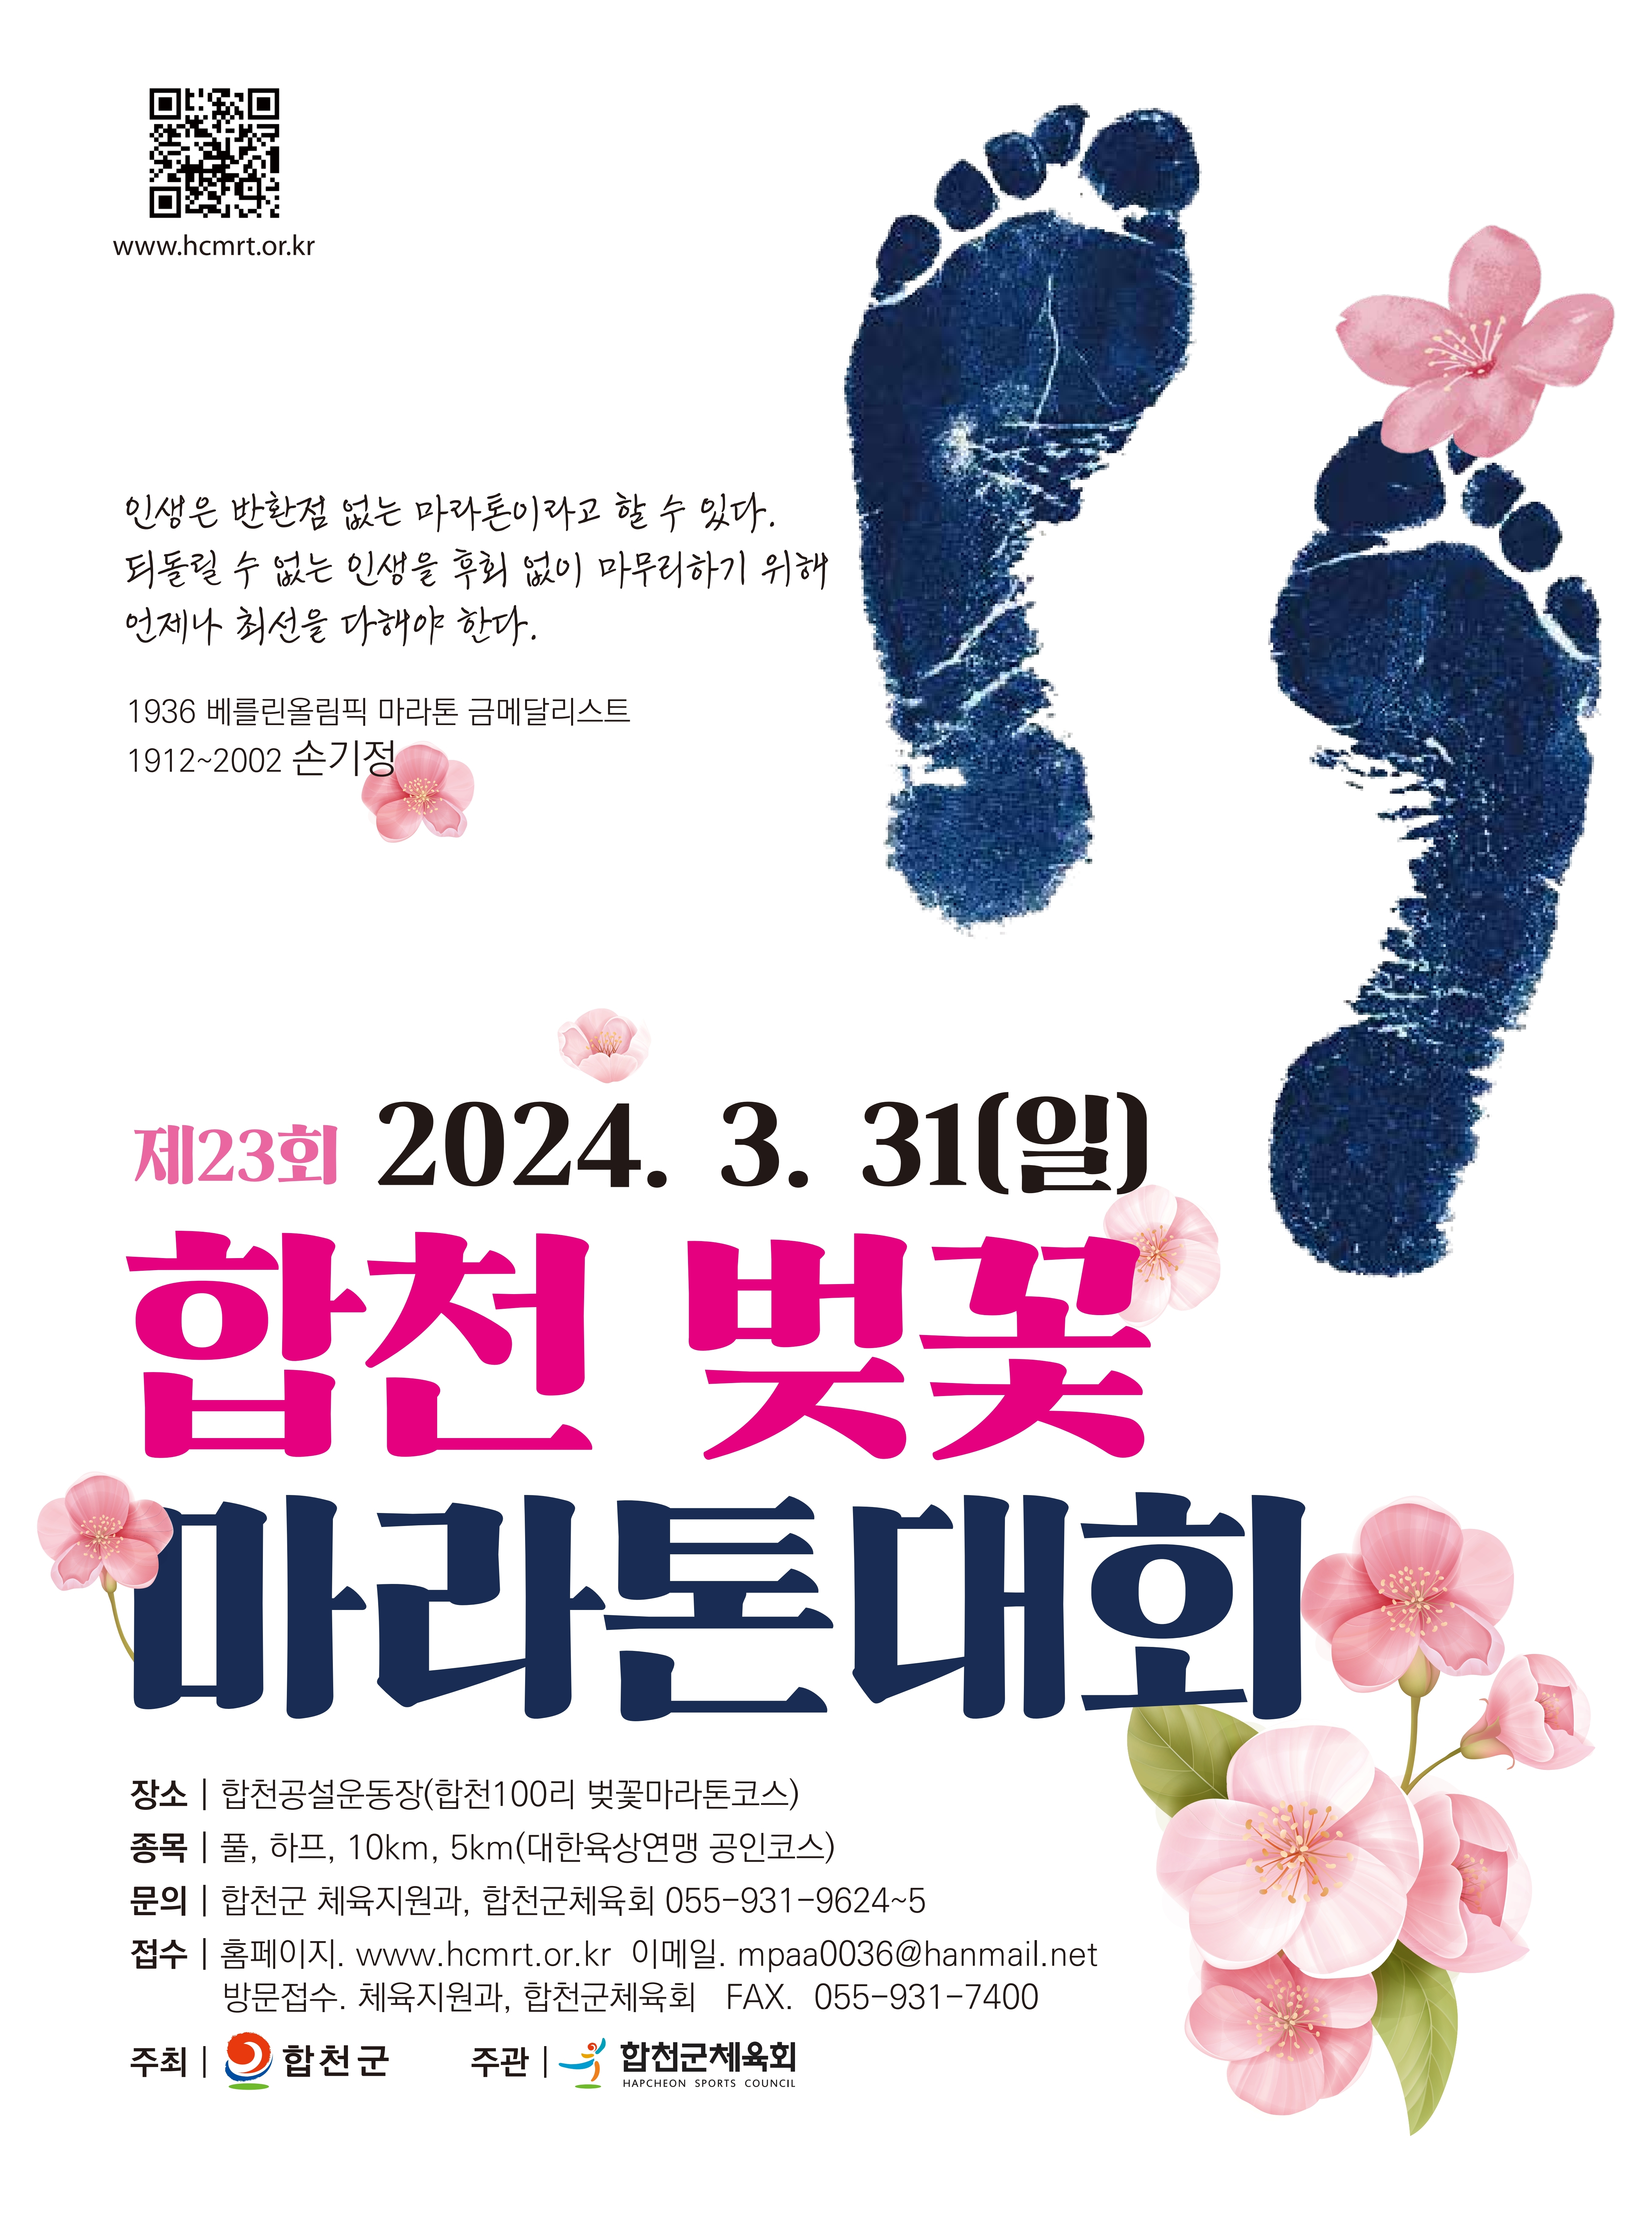 제23회 합천벚꽃마라톤대회 개최 안내 이미지 2 - 본문에 자세한설명을 제공합니다.